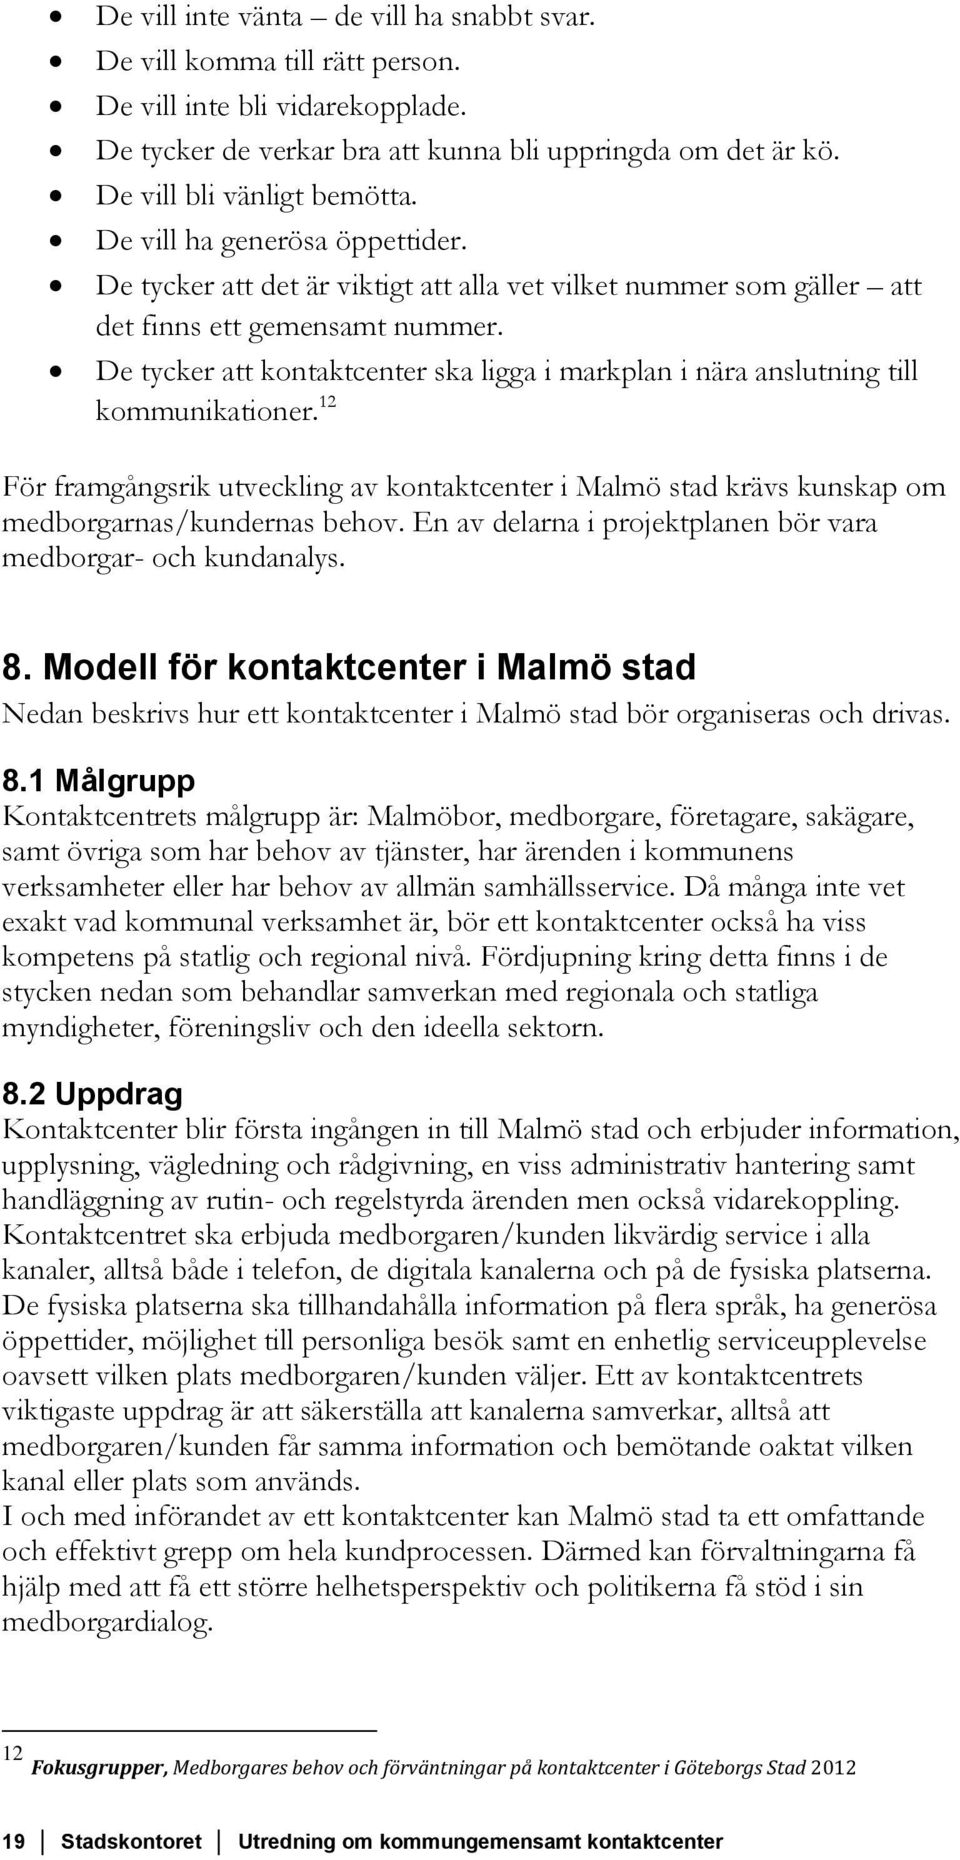 De tycker att kontaktcenter ska ligga i markplan i nära anslutning till kommunikationer. 12 För framgångsrik utveckling av kontaktcenter i Malmö stad krävs kunskap om medborgarnas/kundernas behov.